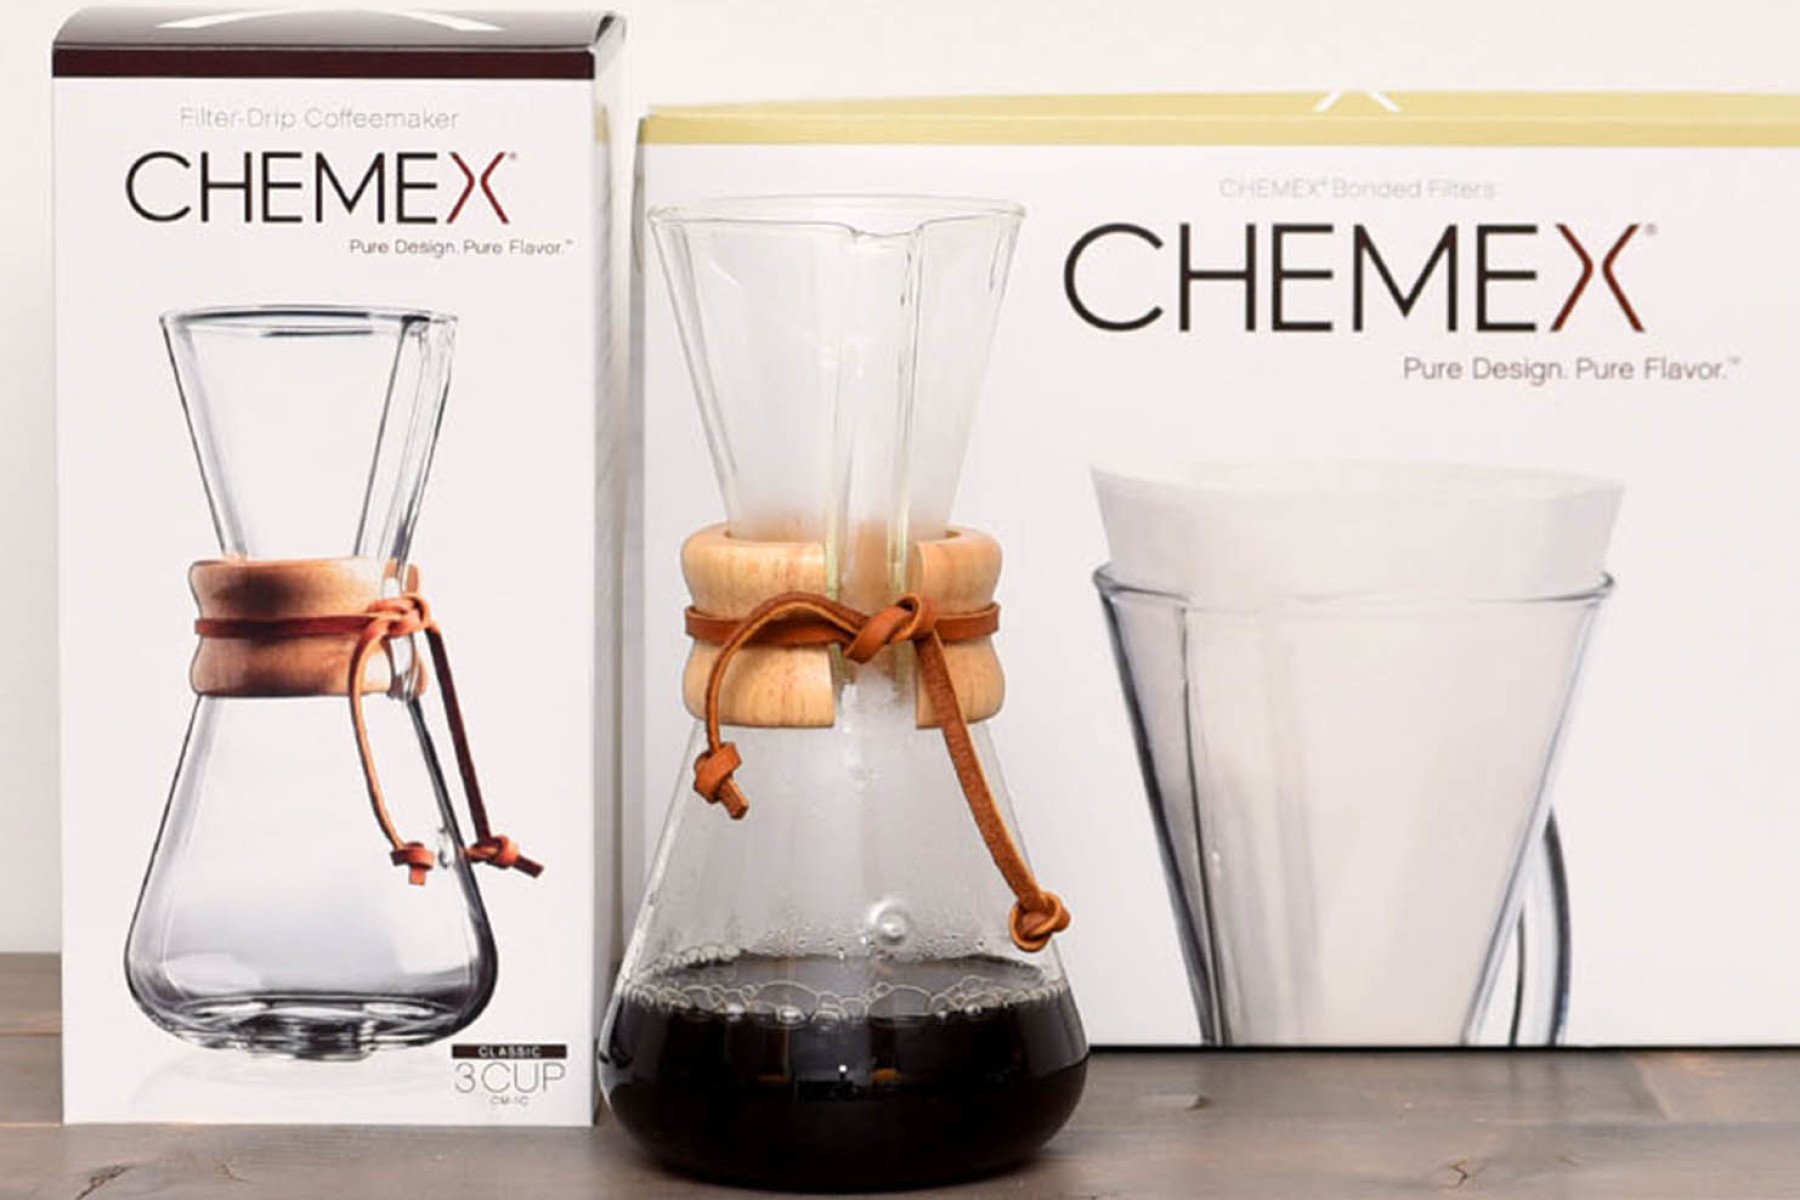 Chemex koffie gadget - 250g specialty koffiebonen